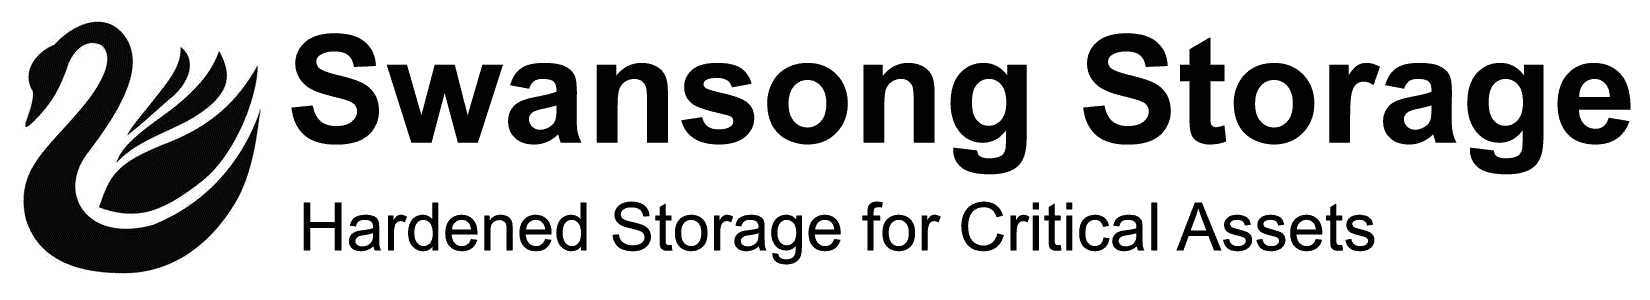 Swansong Storage